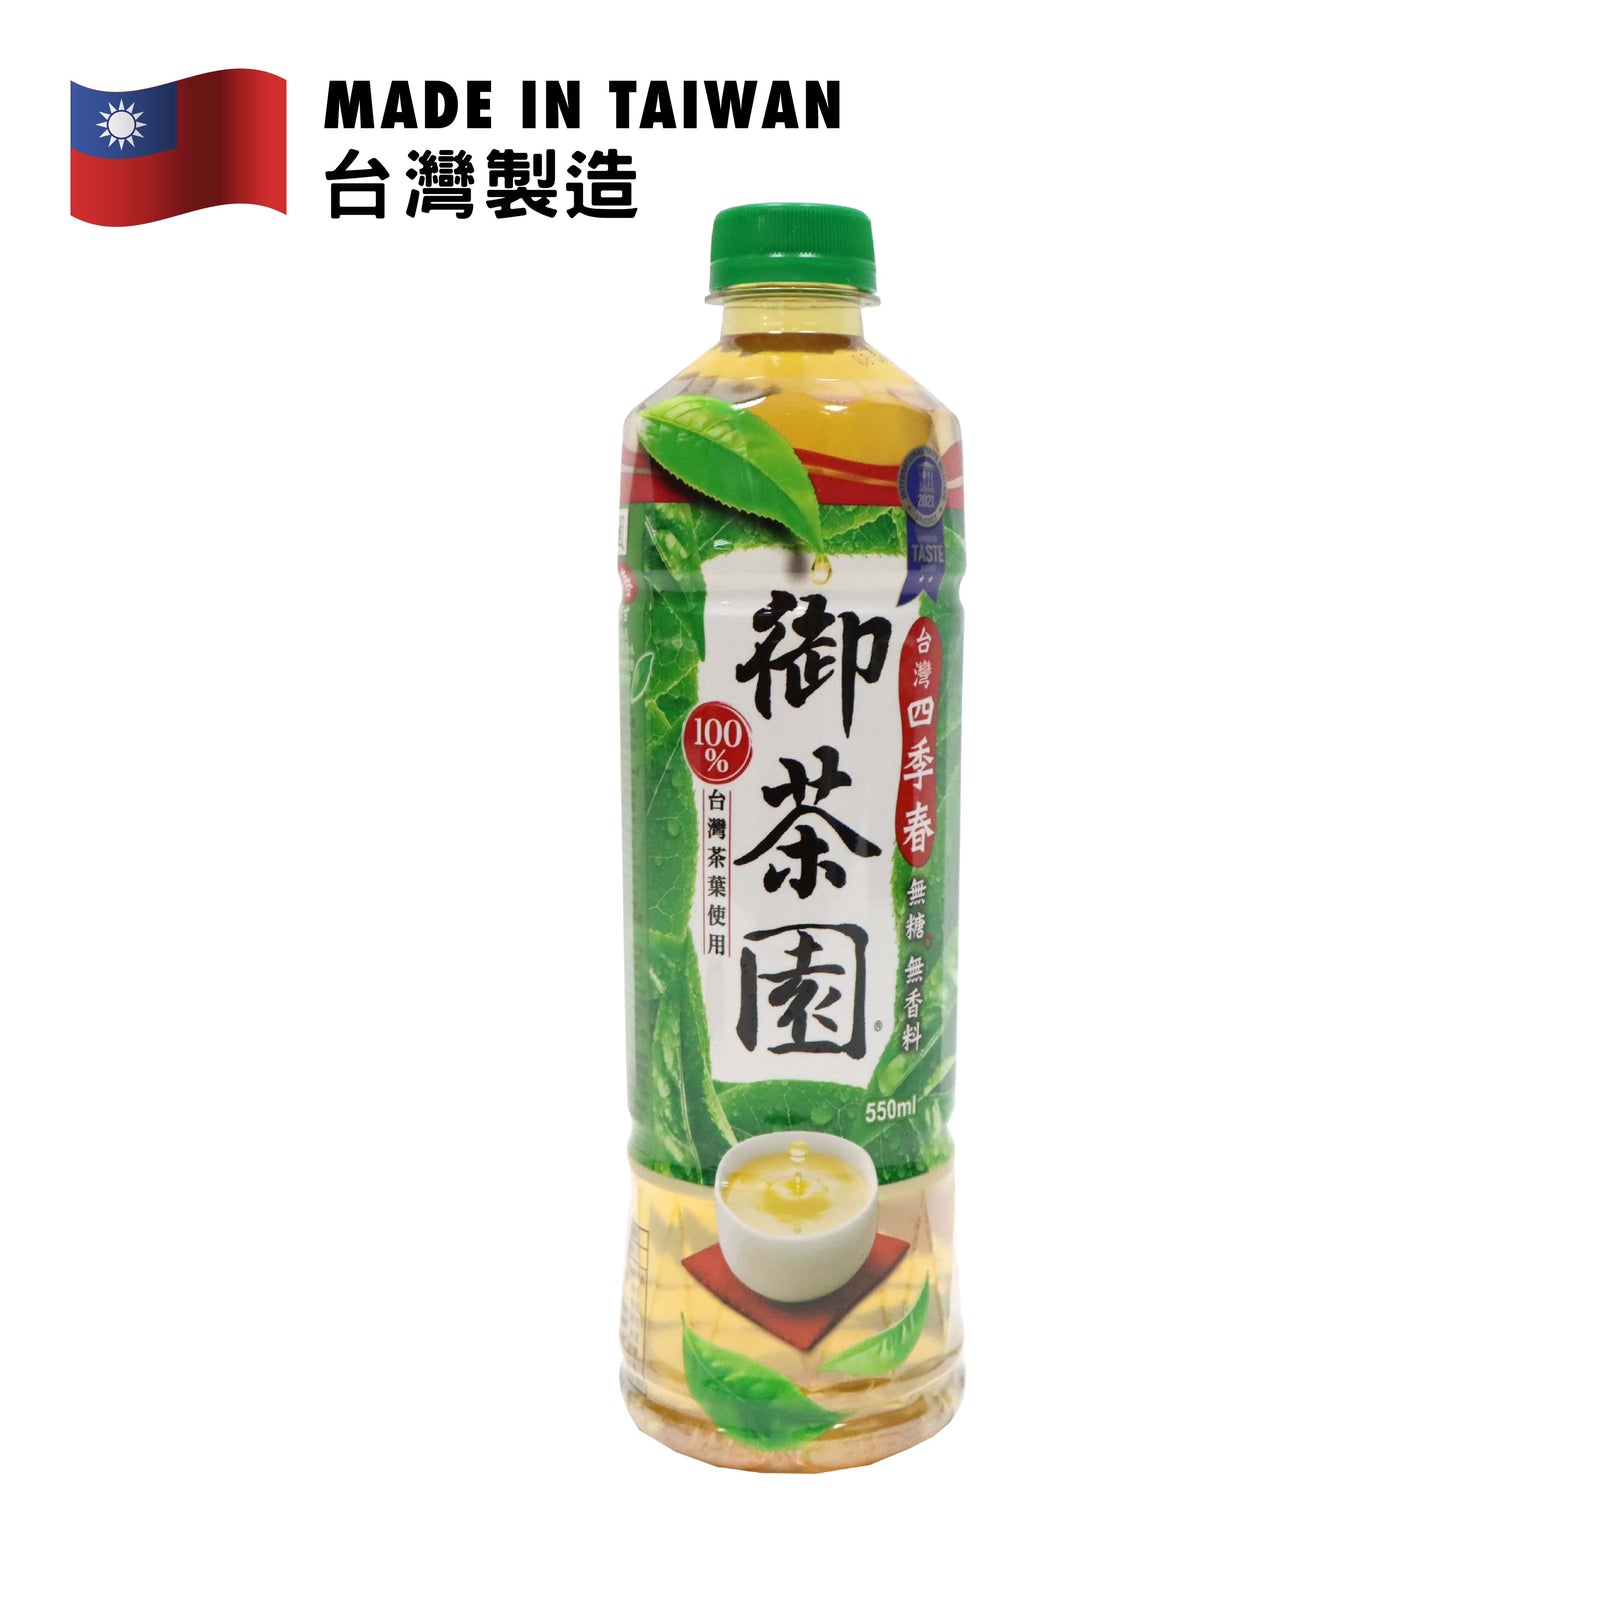 Royal Tea Garden Taiwanese Four Season Green Tea (No Sugar) 550ml